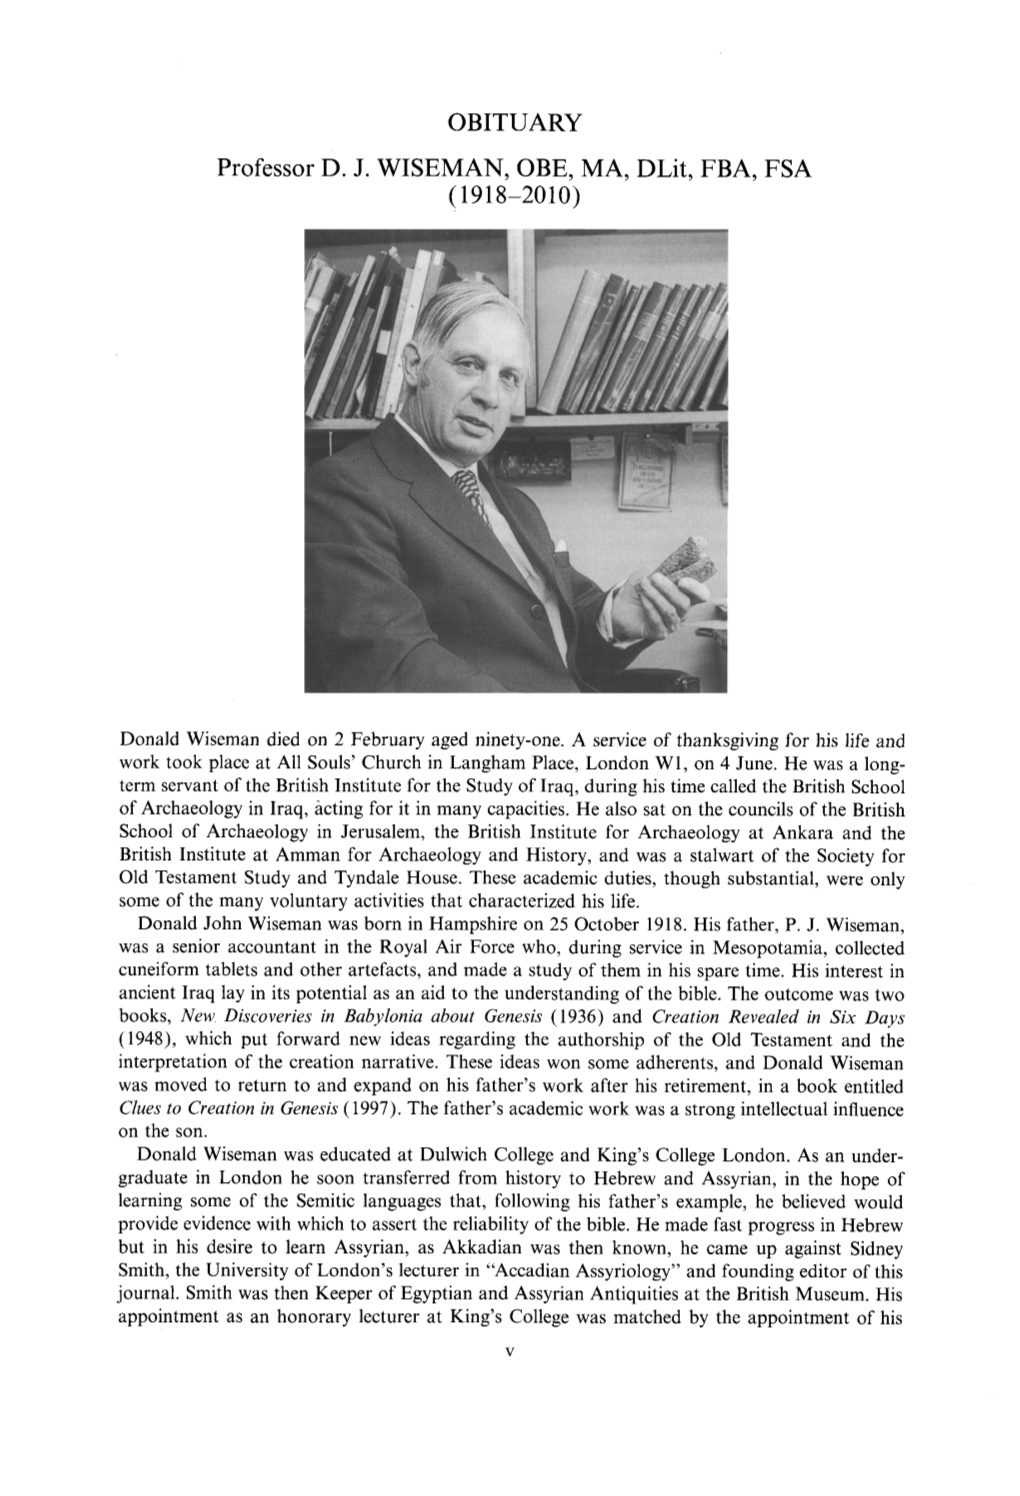 OBITUARY Professor D. J. WISEMAN, OBE, MA, Dlit, FBA, FSA (1918-2010)